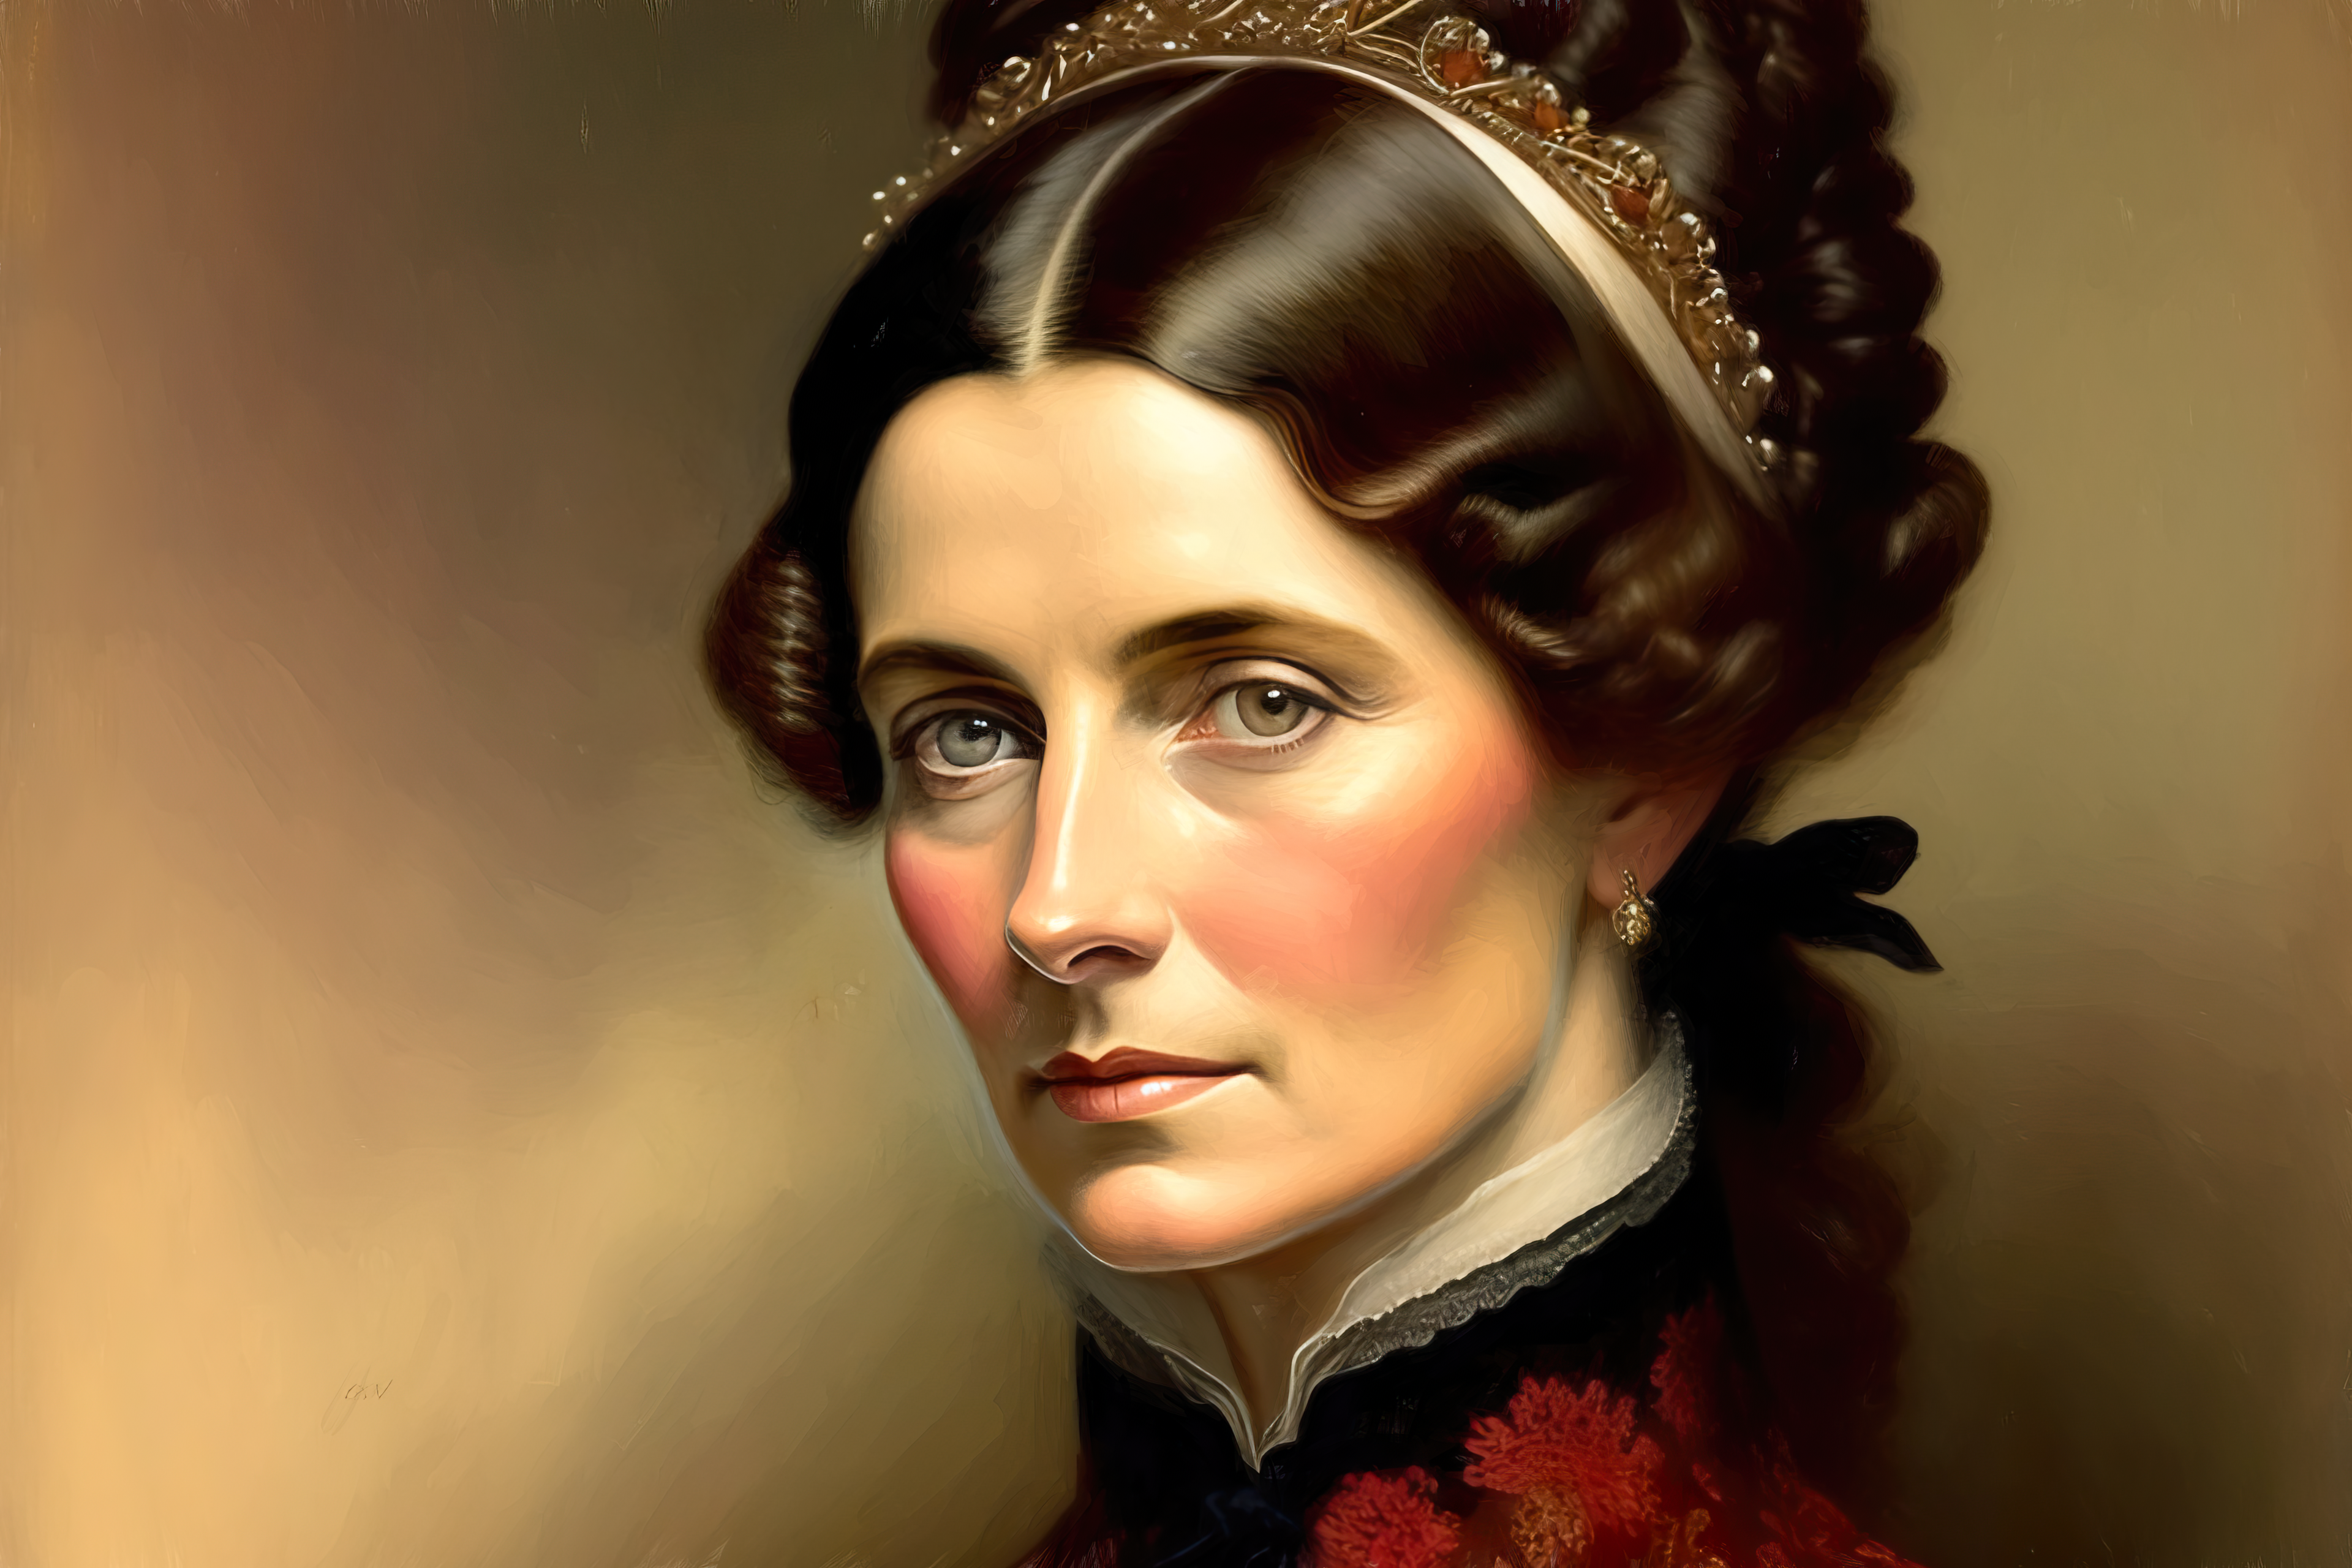 General 3840x2560 Lexica AI art portrait women oil painting victorian clothes vibrant detailed face